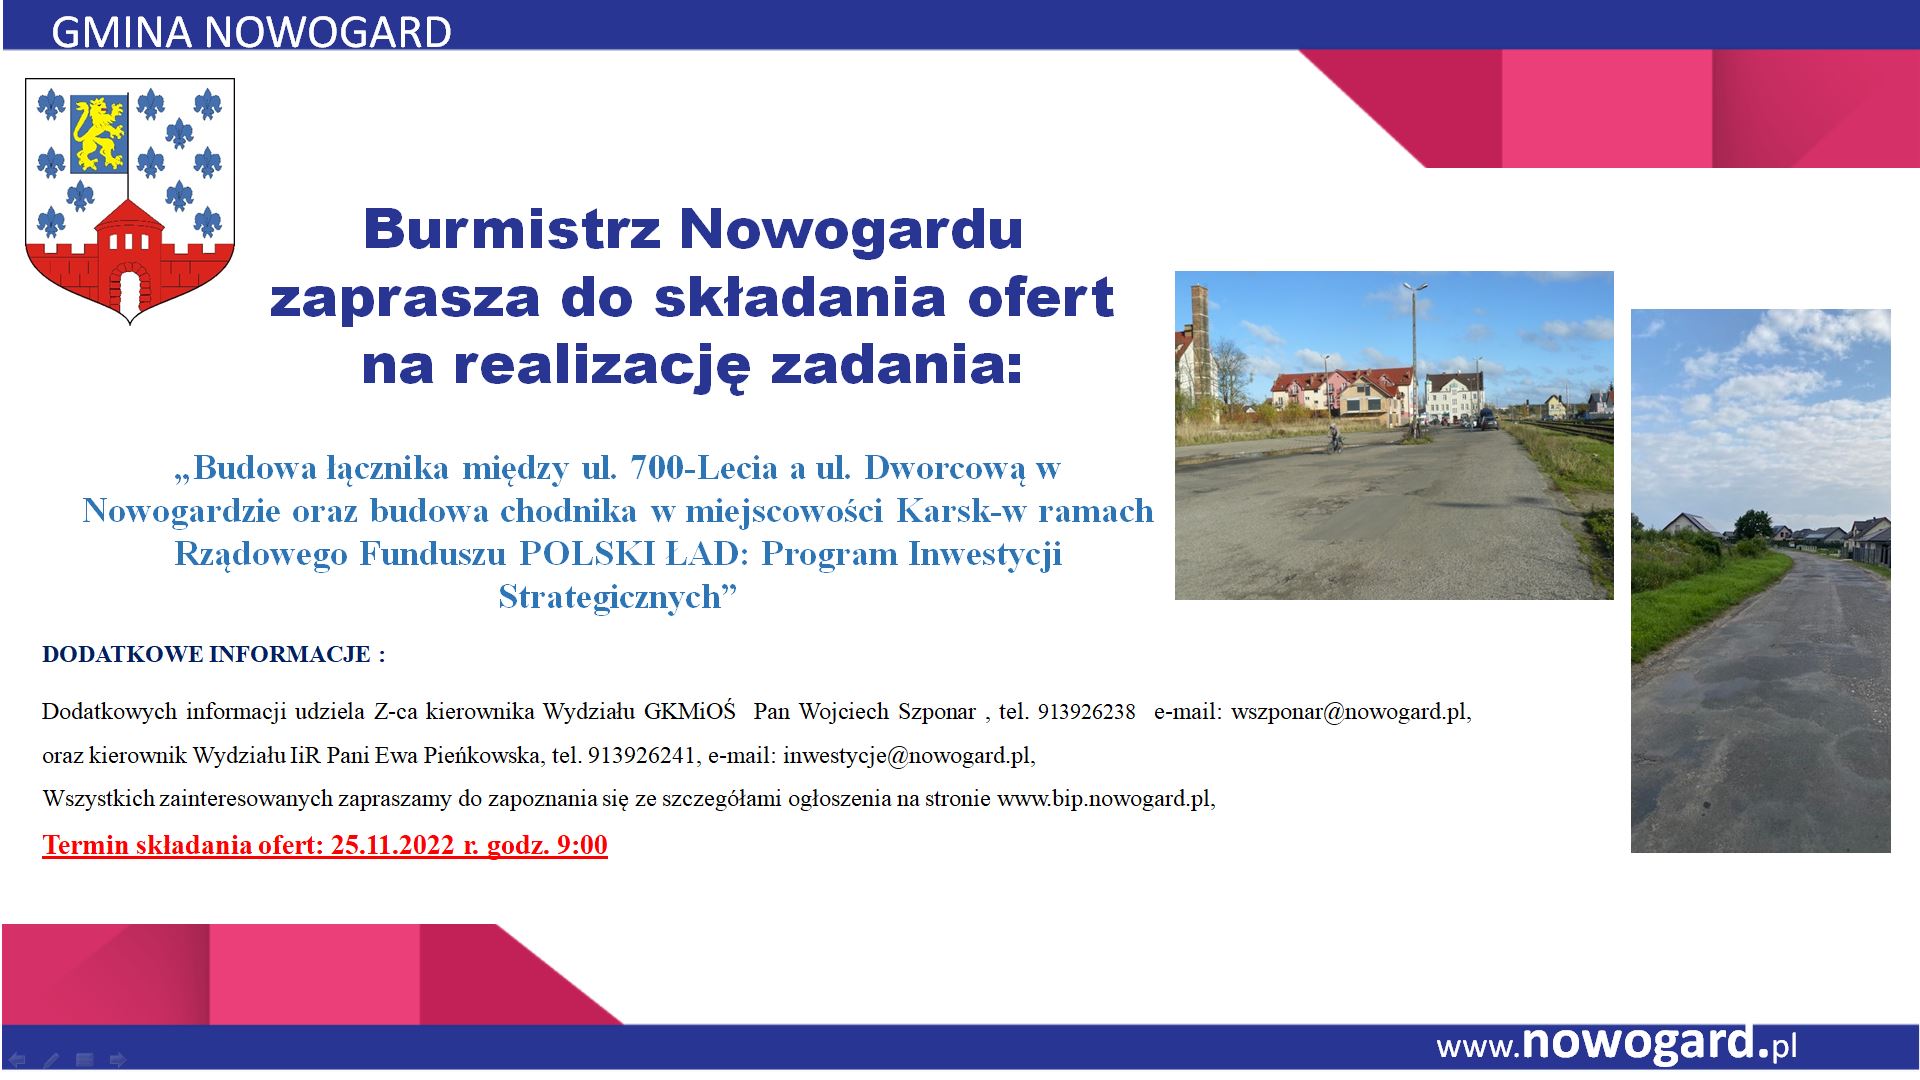 Budowa łącznika między ul. 700-Lecia a ul. Dworcową w Nowogardzie oraz budowa chodnika w miejscowości Karsk